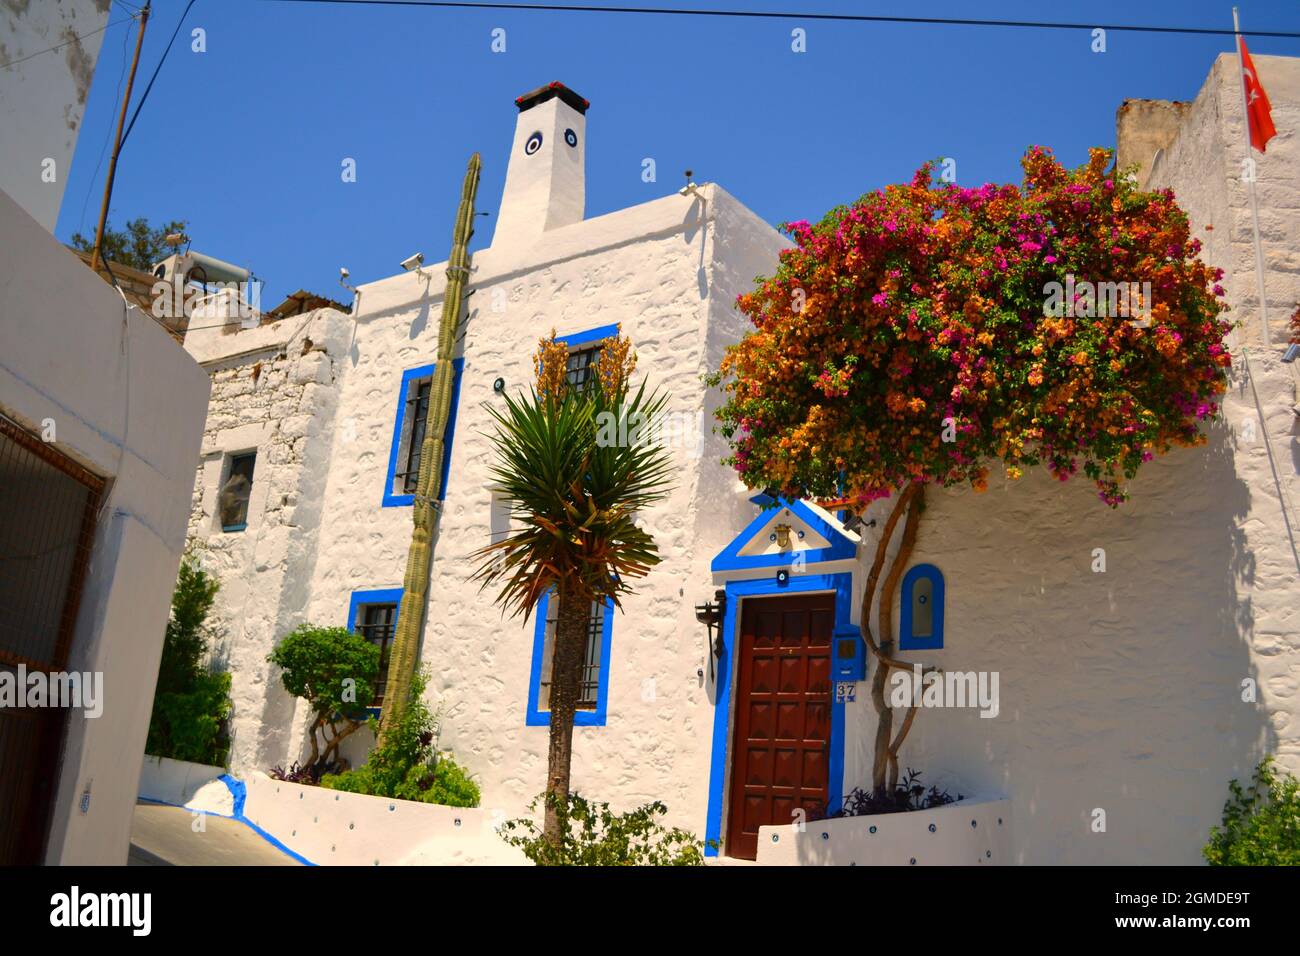 Traditionelle weiße Häuser in Bodrum im mediterranen Stil - Wand mit den bösen Augenperlen Stockfoto